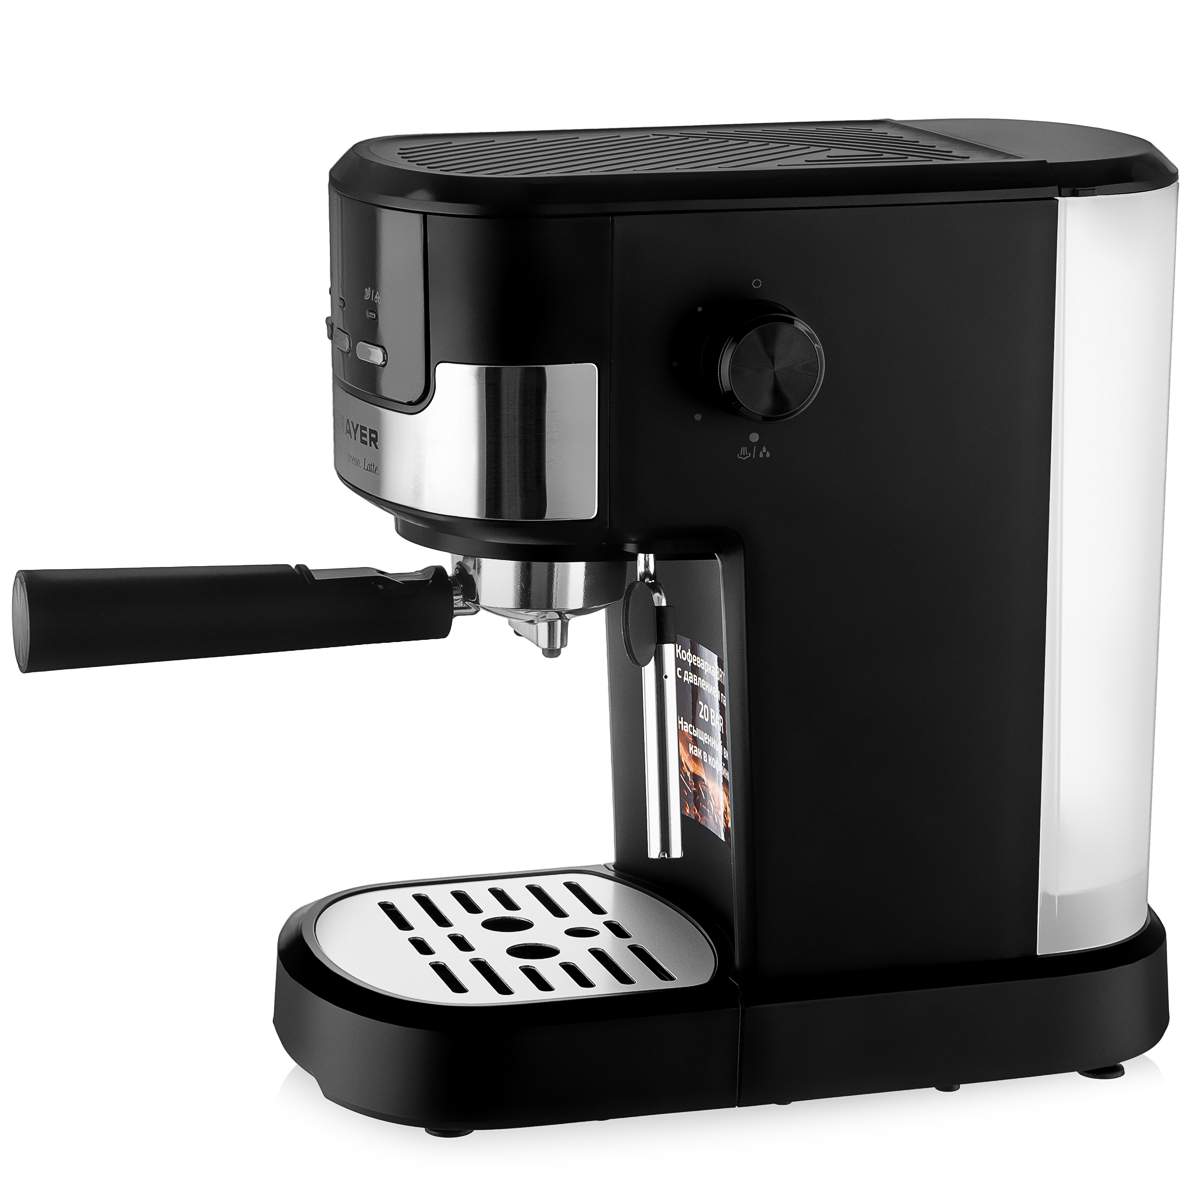 Рожковая кофеварка Brayer BR1112 серебристая, черная мультиварка brayer br2402 серебристая черная